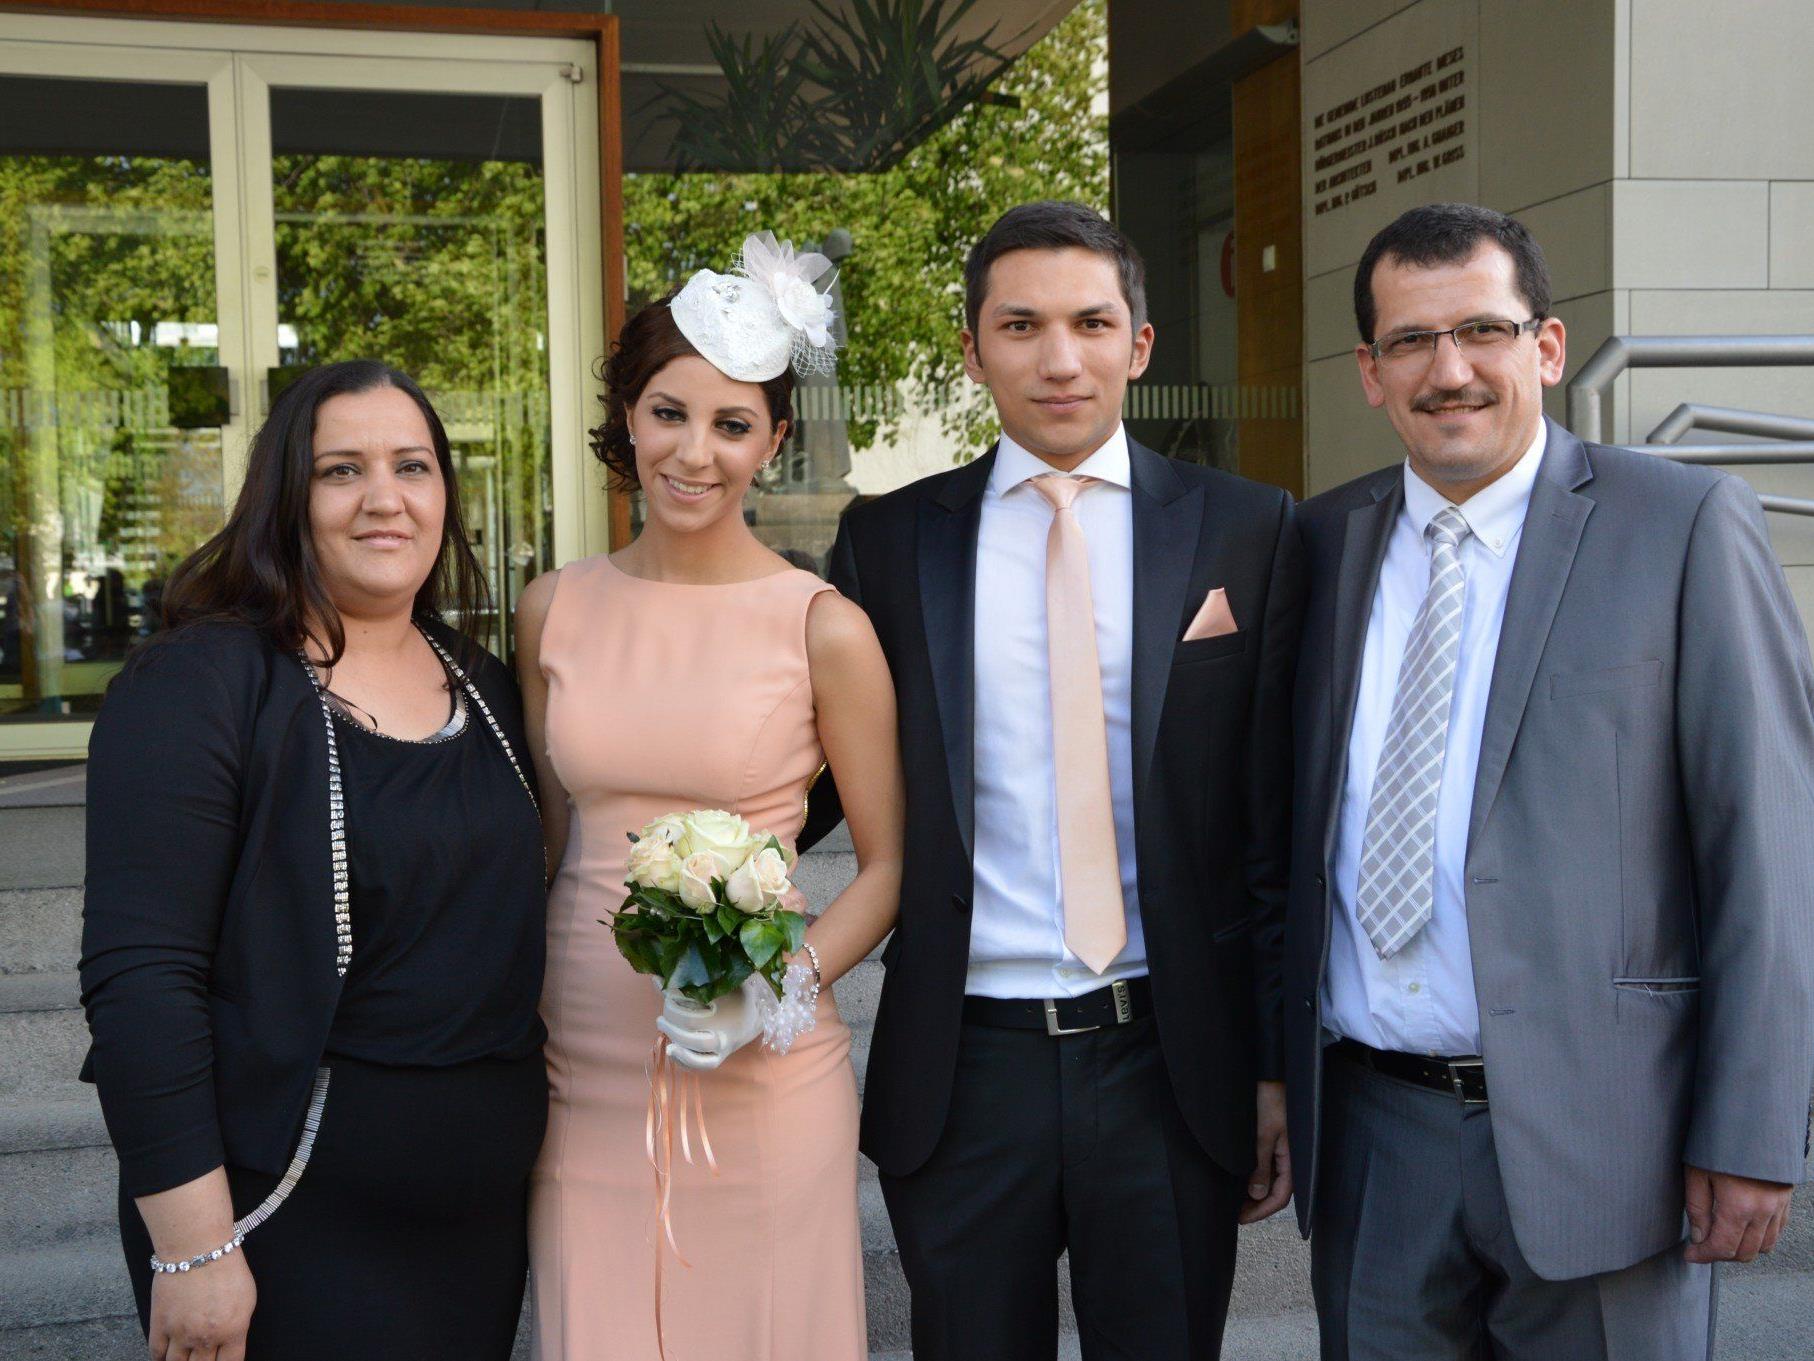 Irem Gökcen und Süleyman Inamlica haben geheiratet